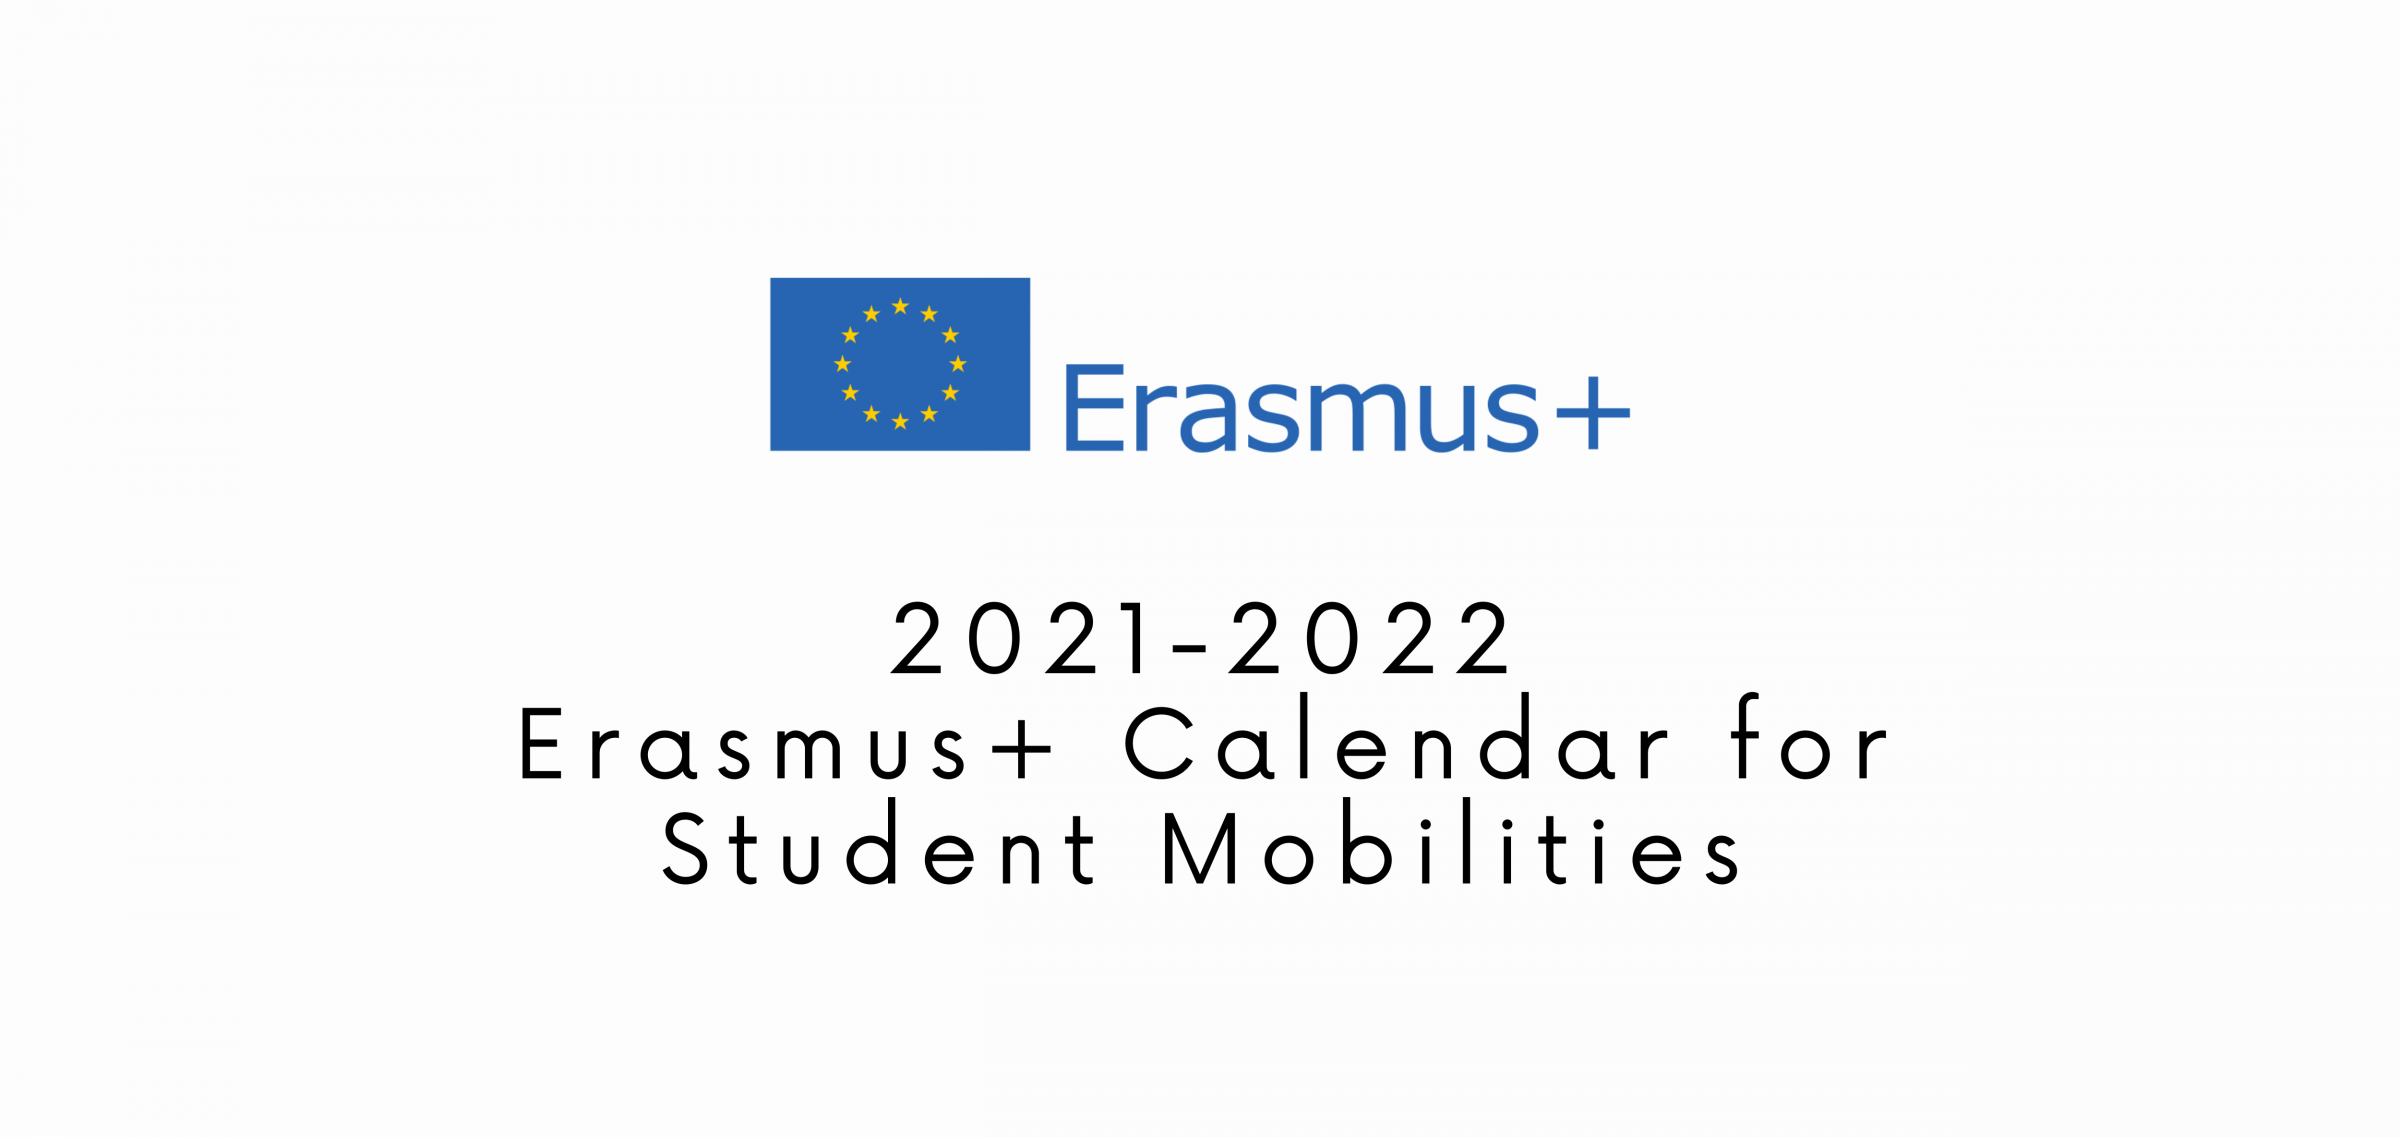 Erasmus+ Student Mobility Calendar